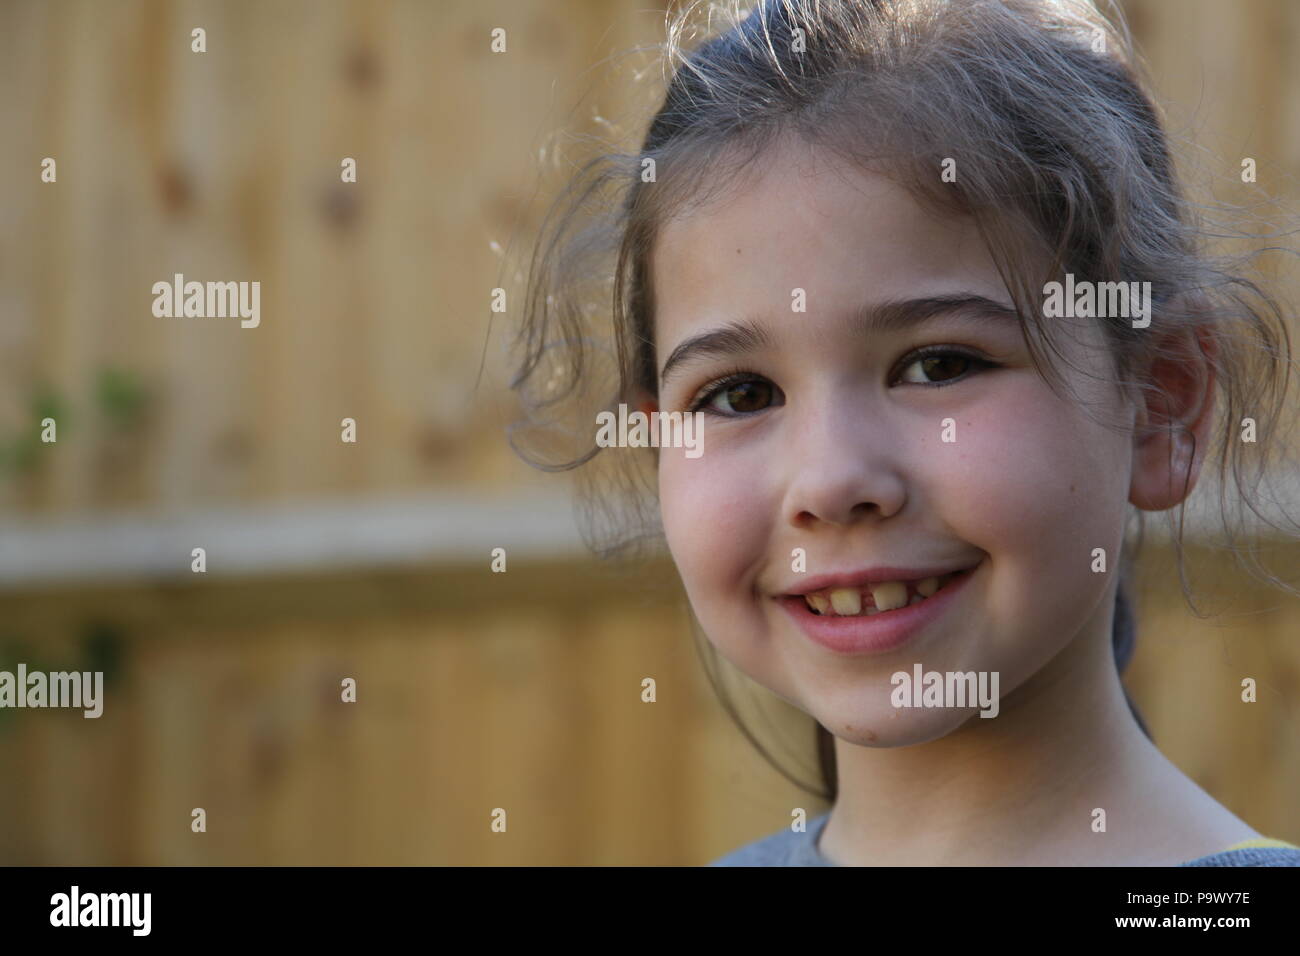 Un retrato de una niña de 6 años de edad. Foto de stock